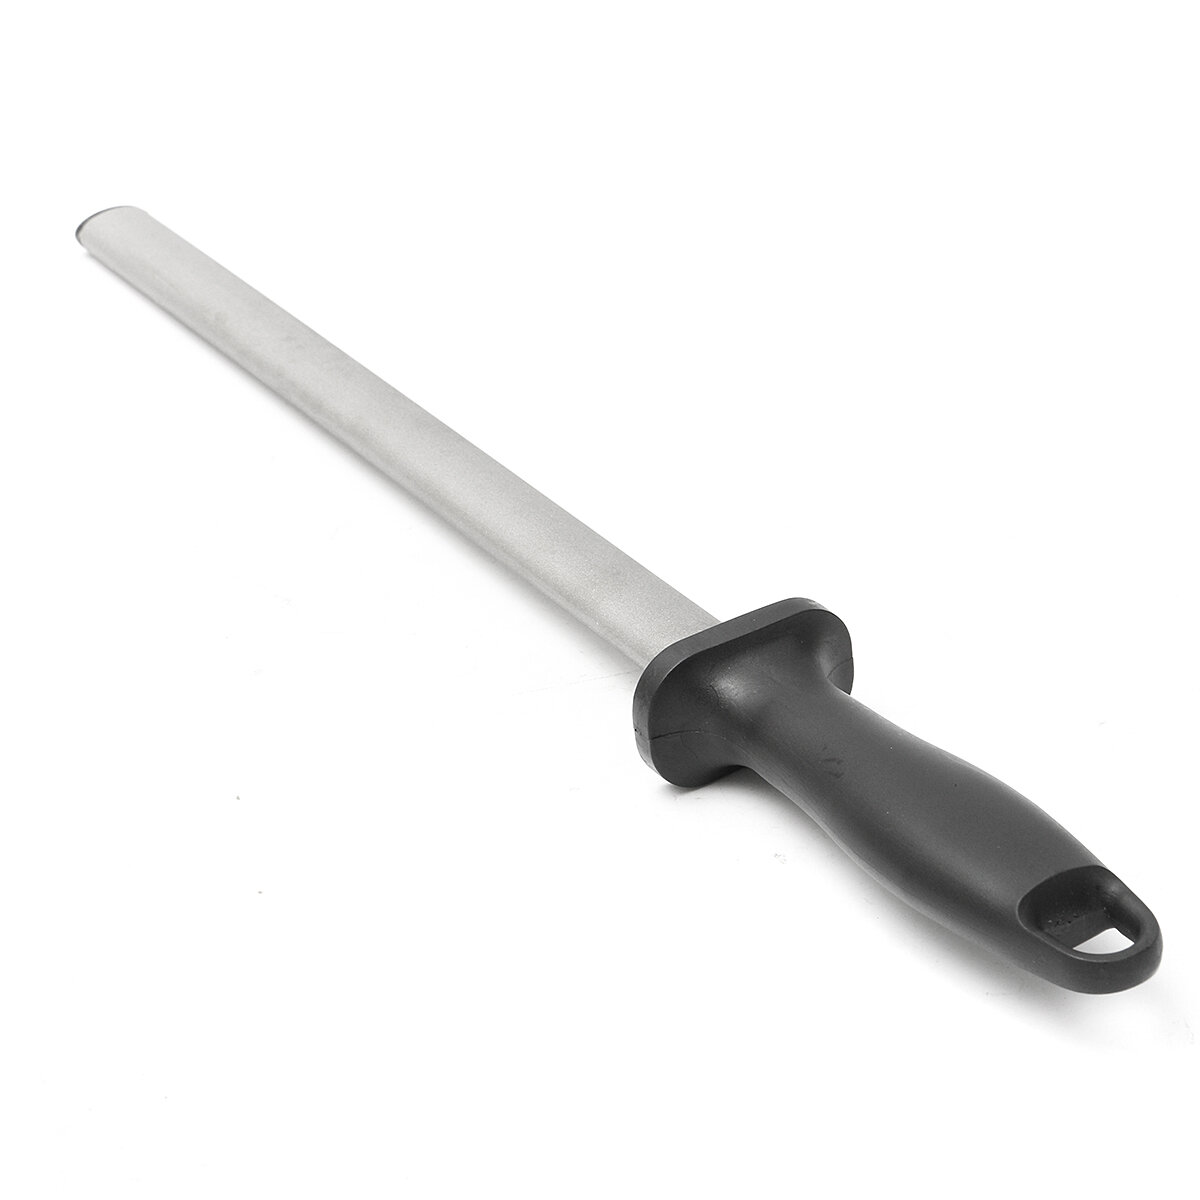 30cm/12" Diamond Knife Sharpener Sharpening Steel 600 Grit Oval Design Efficient and Safe Tool Sharpening COD